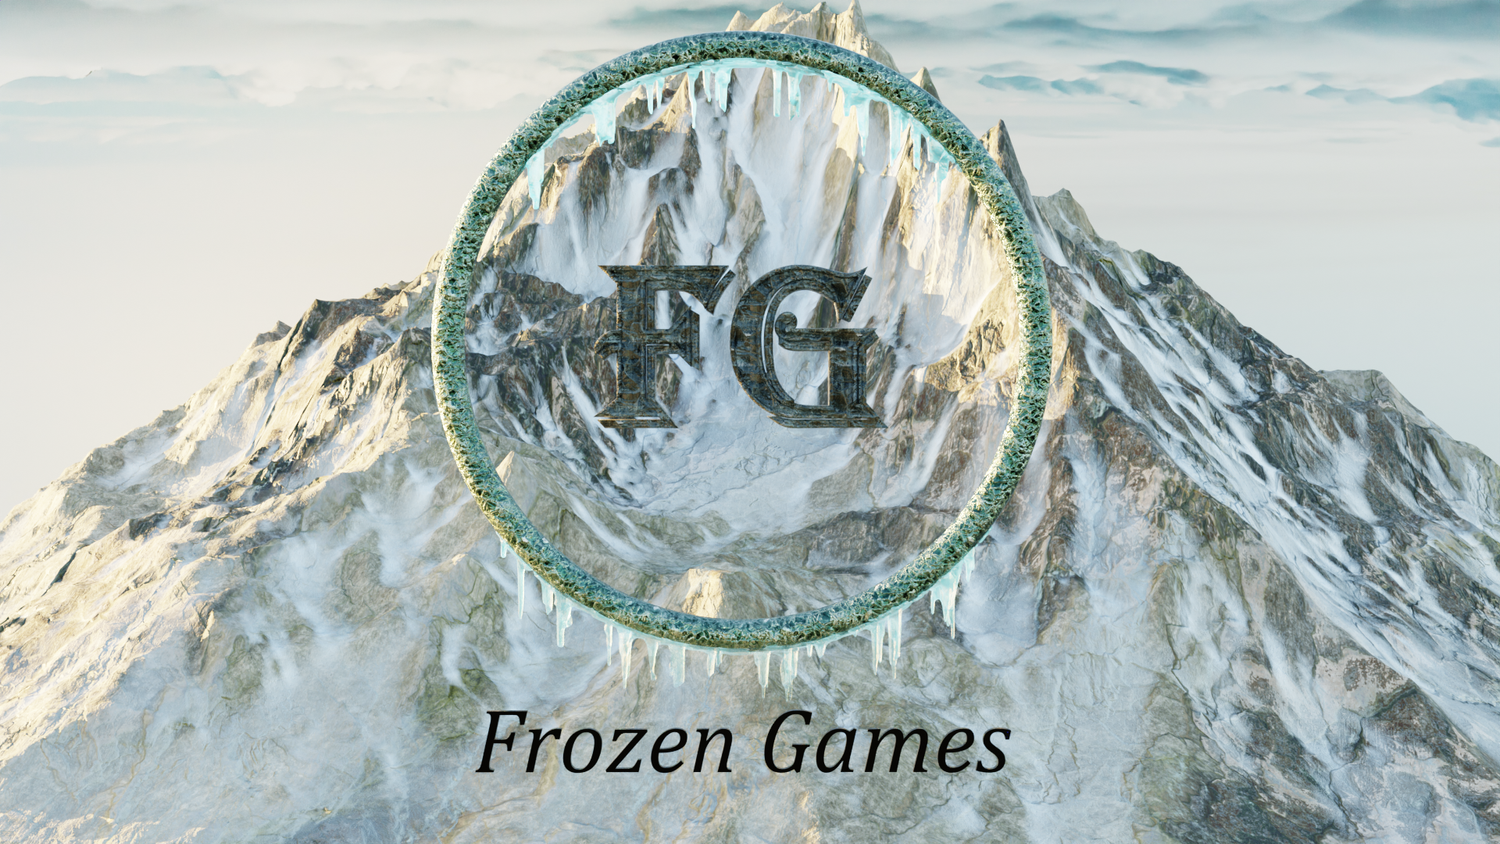 Frozen Games Website